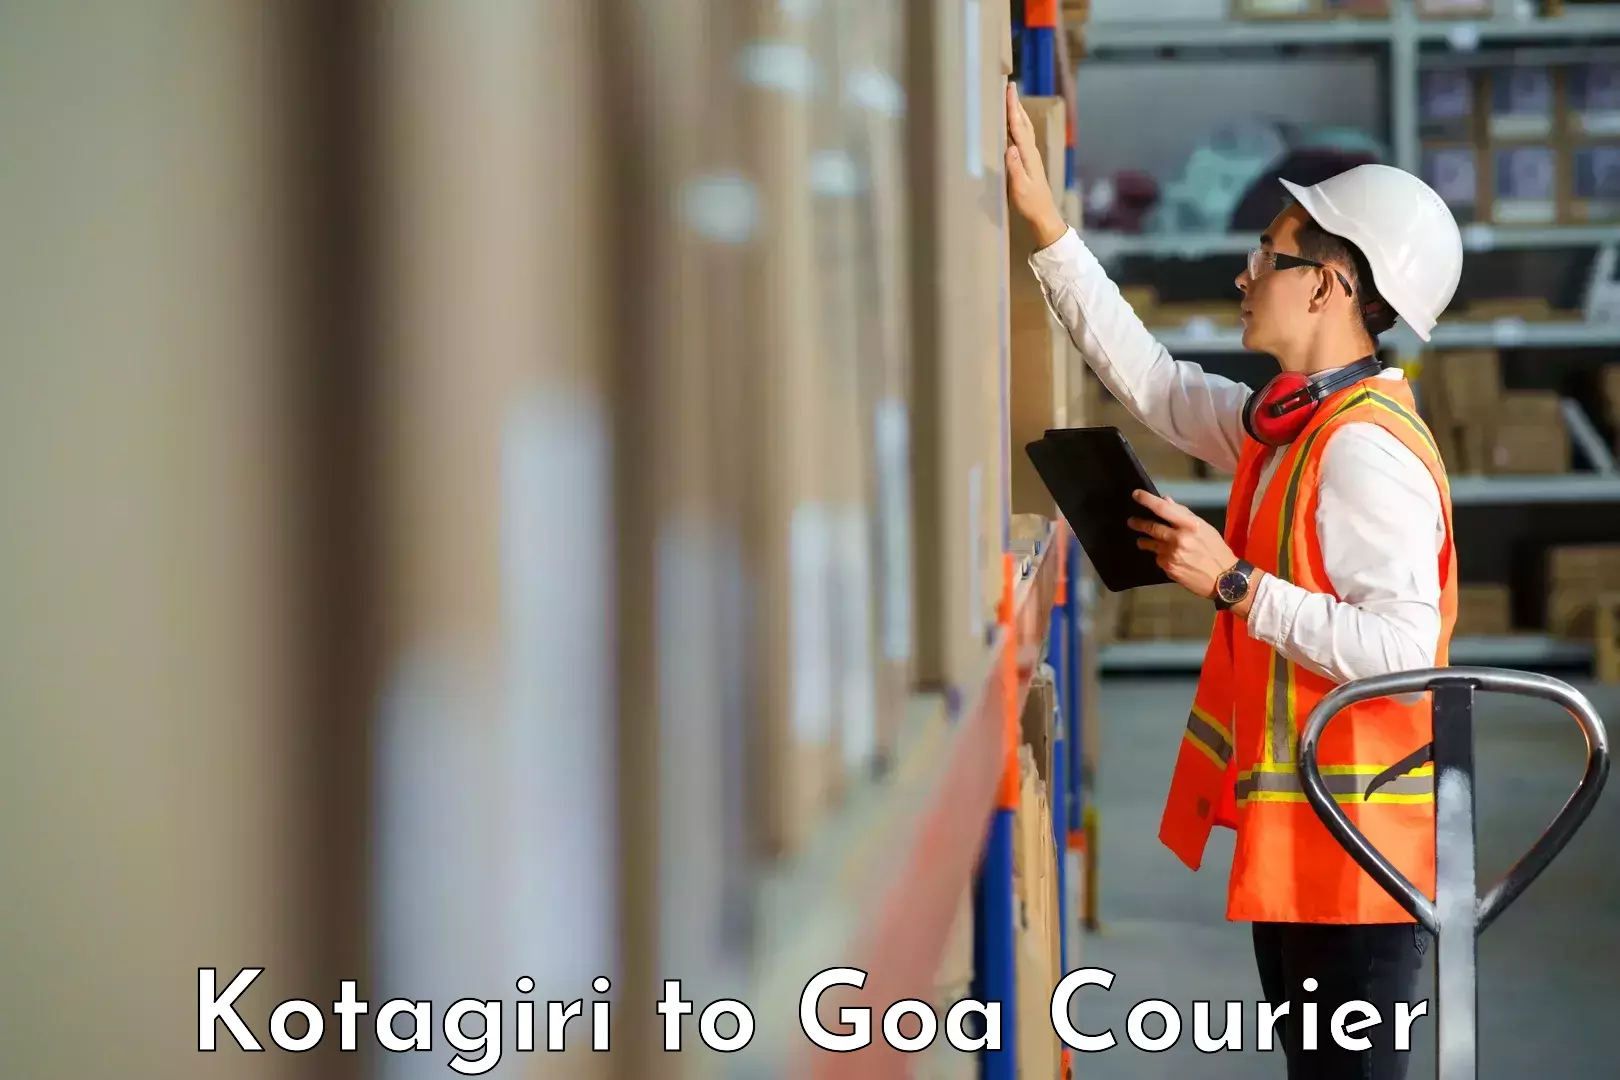 Reliable courier services Kotagiri to NIT Goa